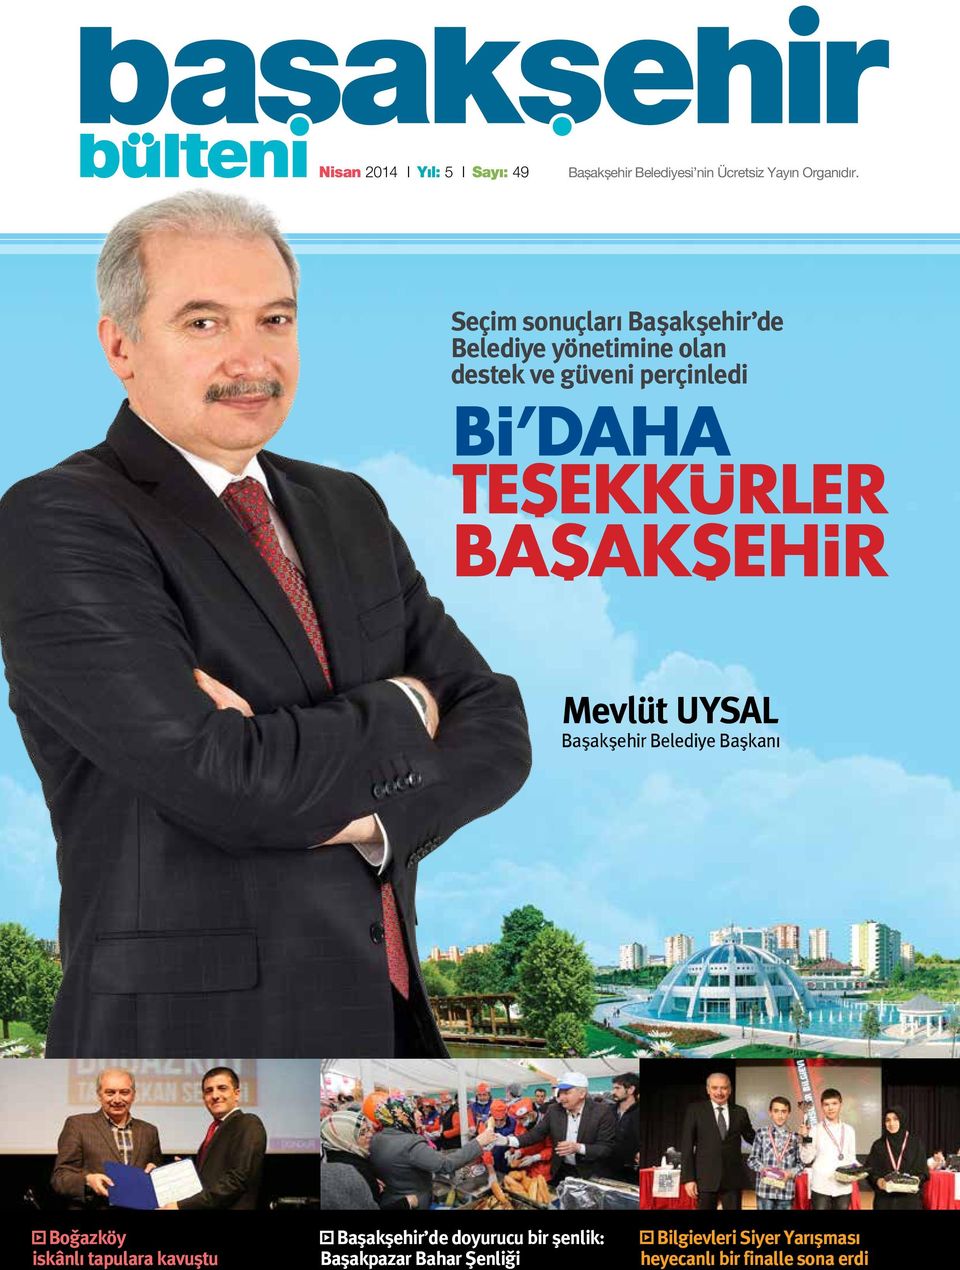 UYSAL Başakşehir Belediye Başkanı Boğazköy iskânlı tapulara kavuştu Başakşehir de